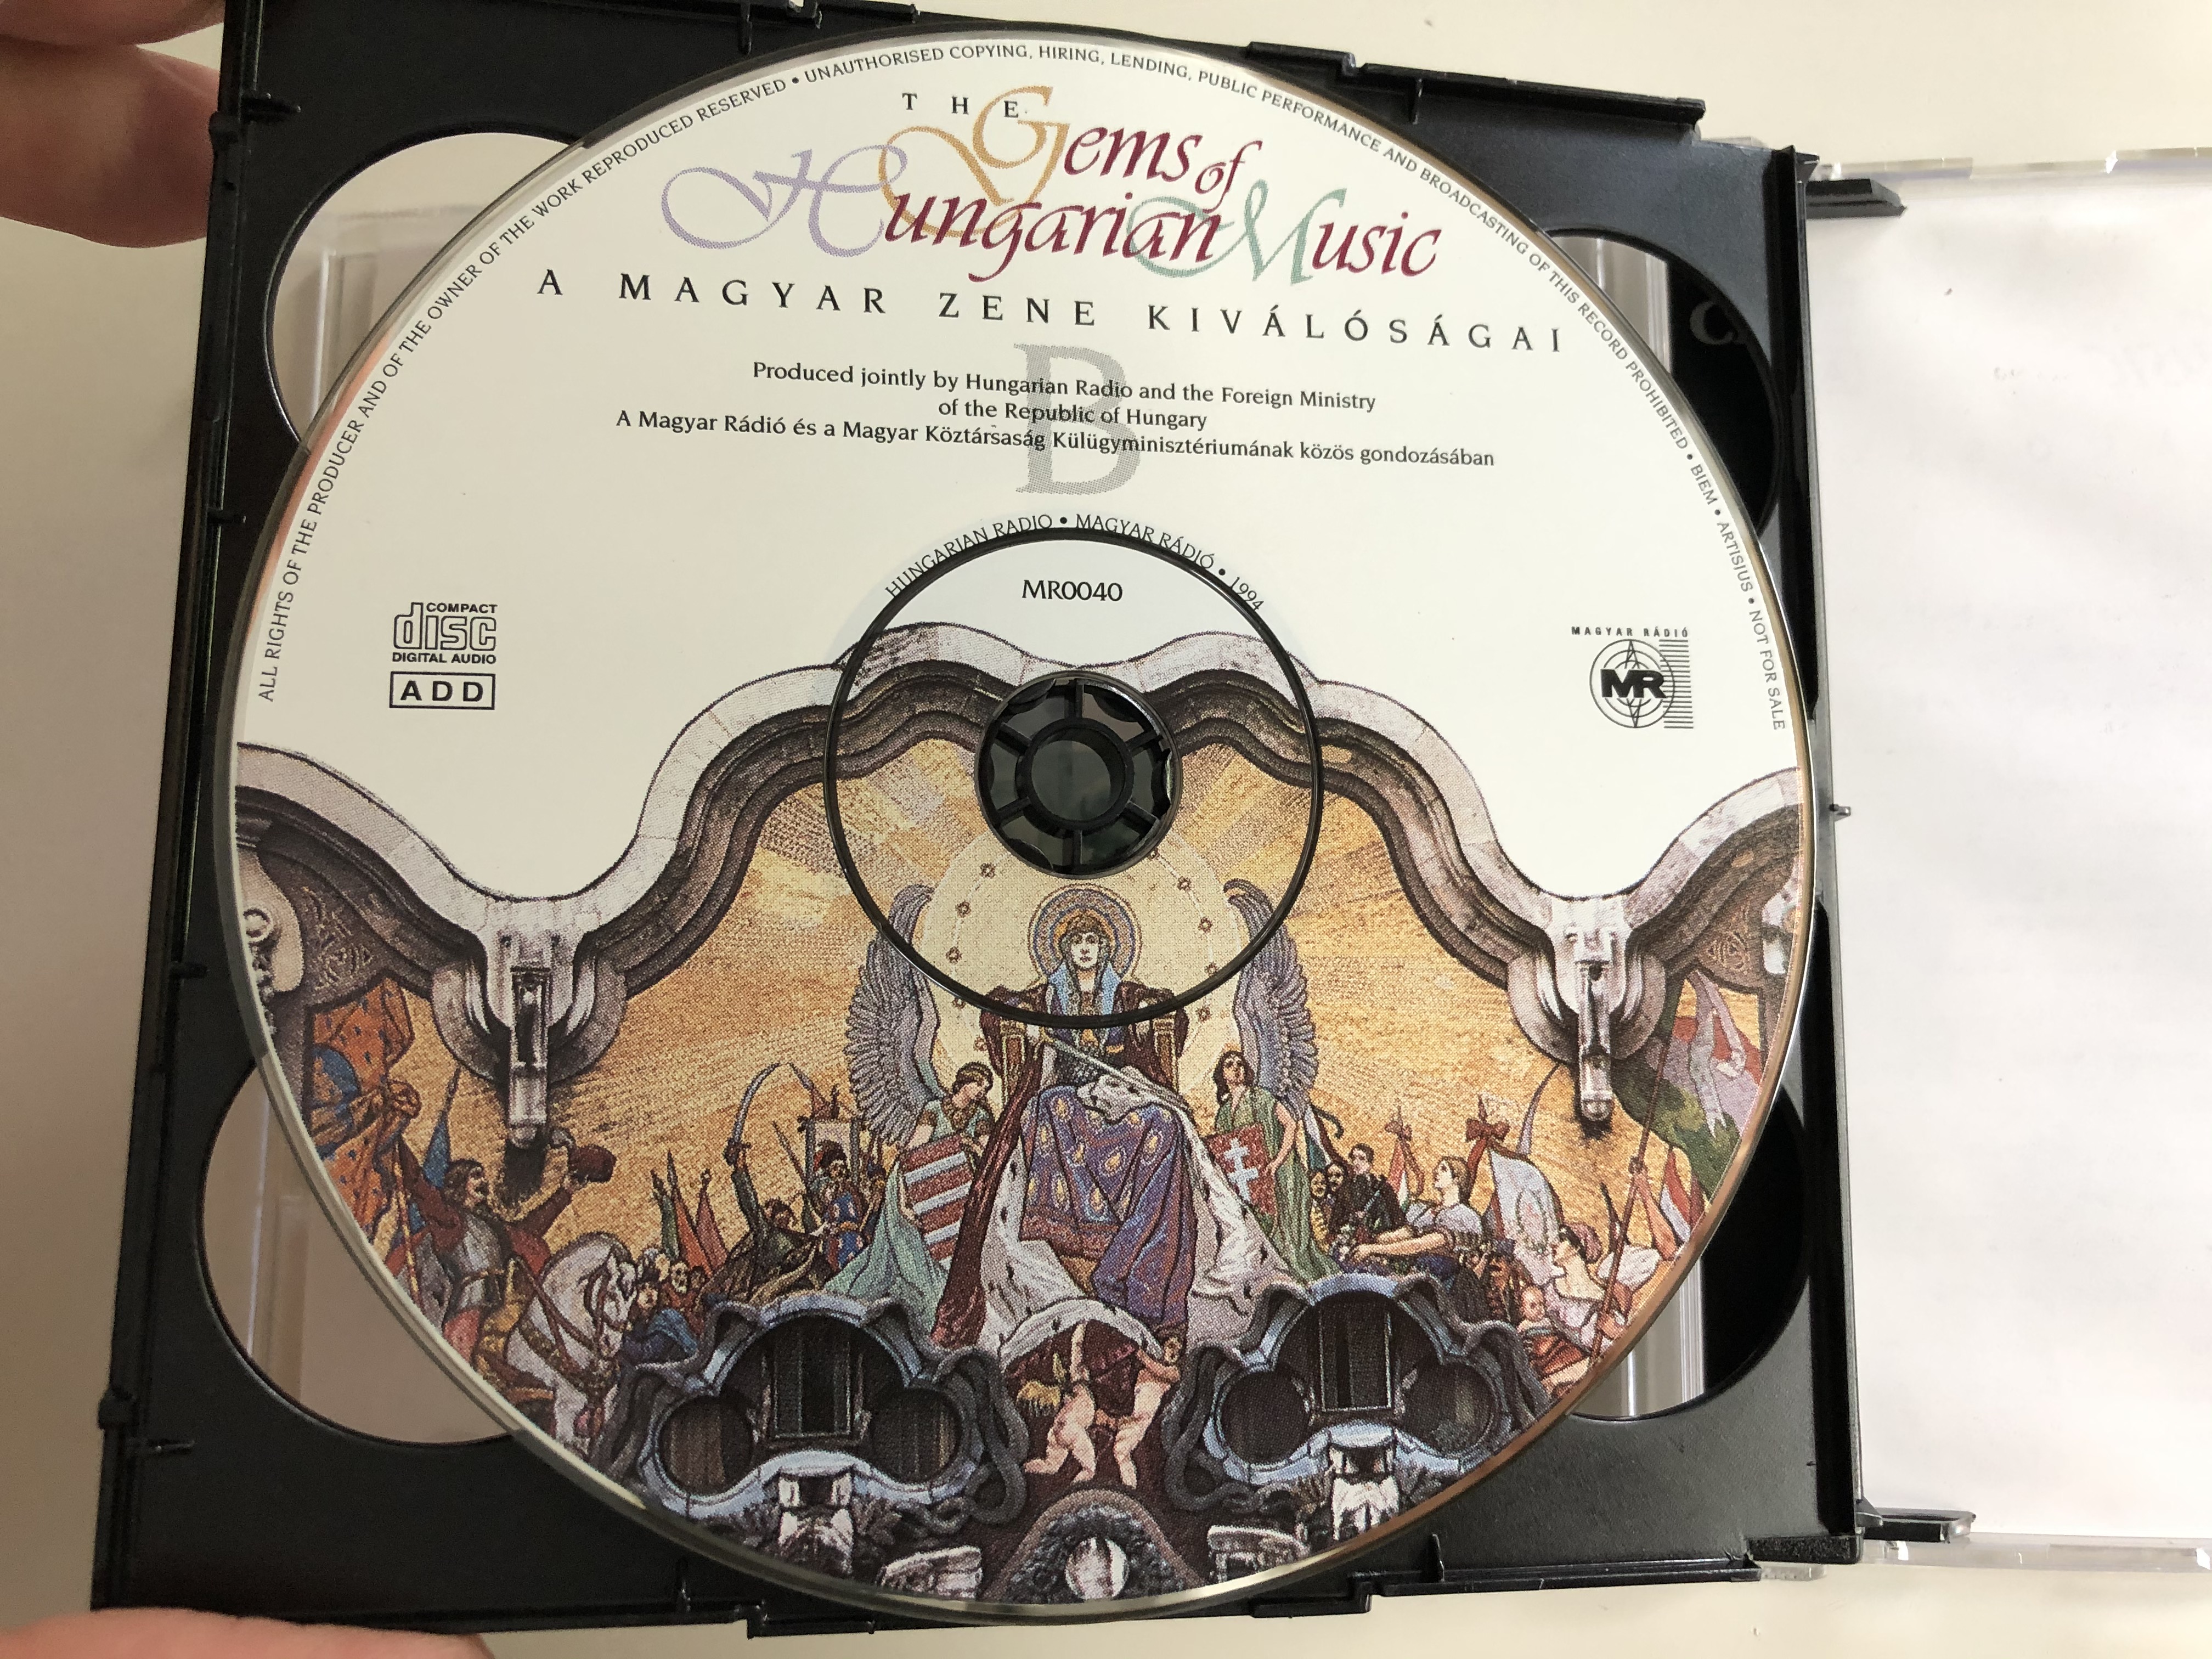 the-gems-of-hungarian-music-a-magyar-zene-kivalosagai-magyar-radio-2x-audio-cd-1994-mr004-13-.jpg